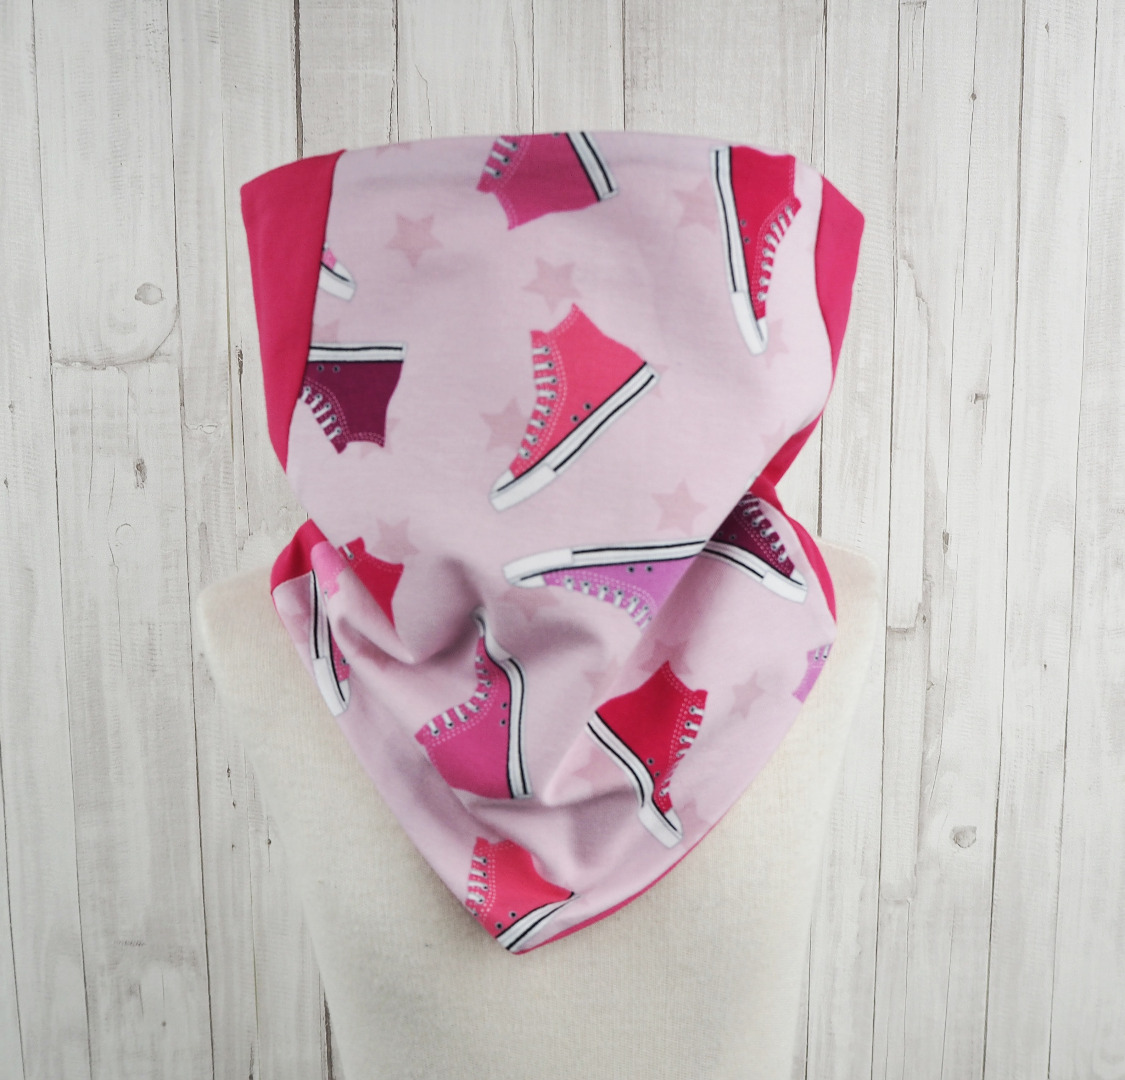 Schlupfschal Sneaker Mädchen pink und rosa - Schal für Kinder mit Turnschuhen und Sternen - Kinderloop aus Jersey